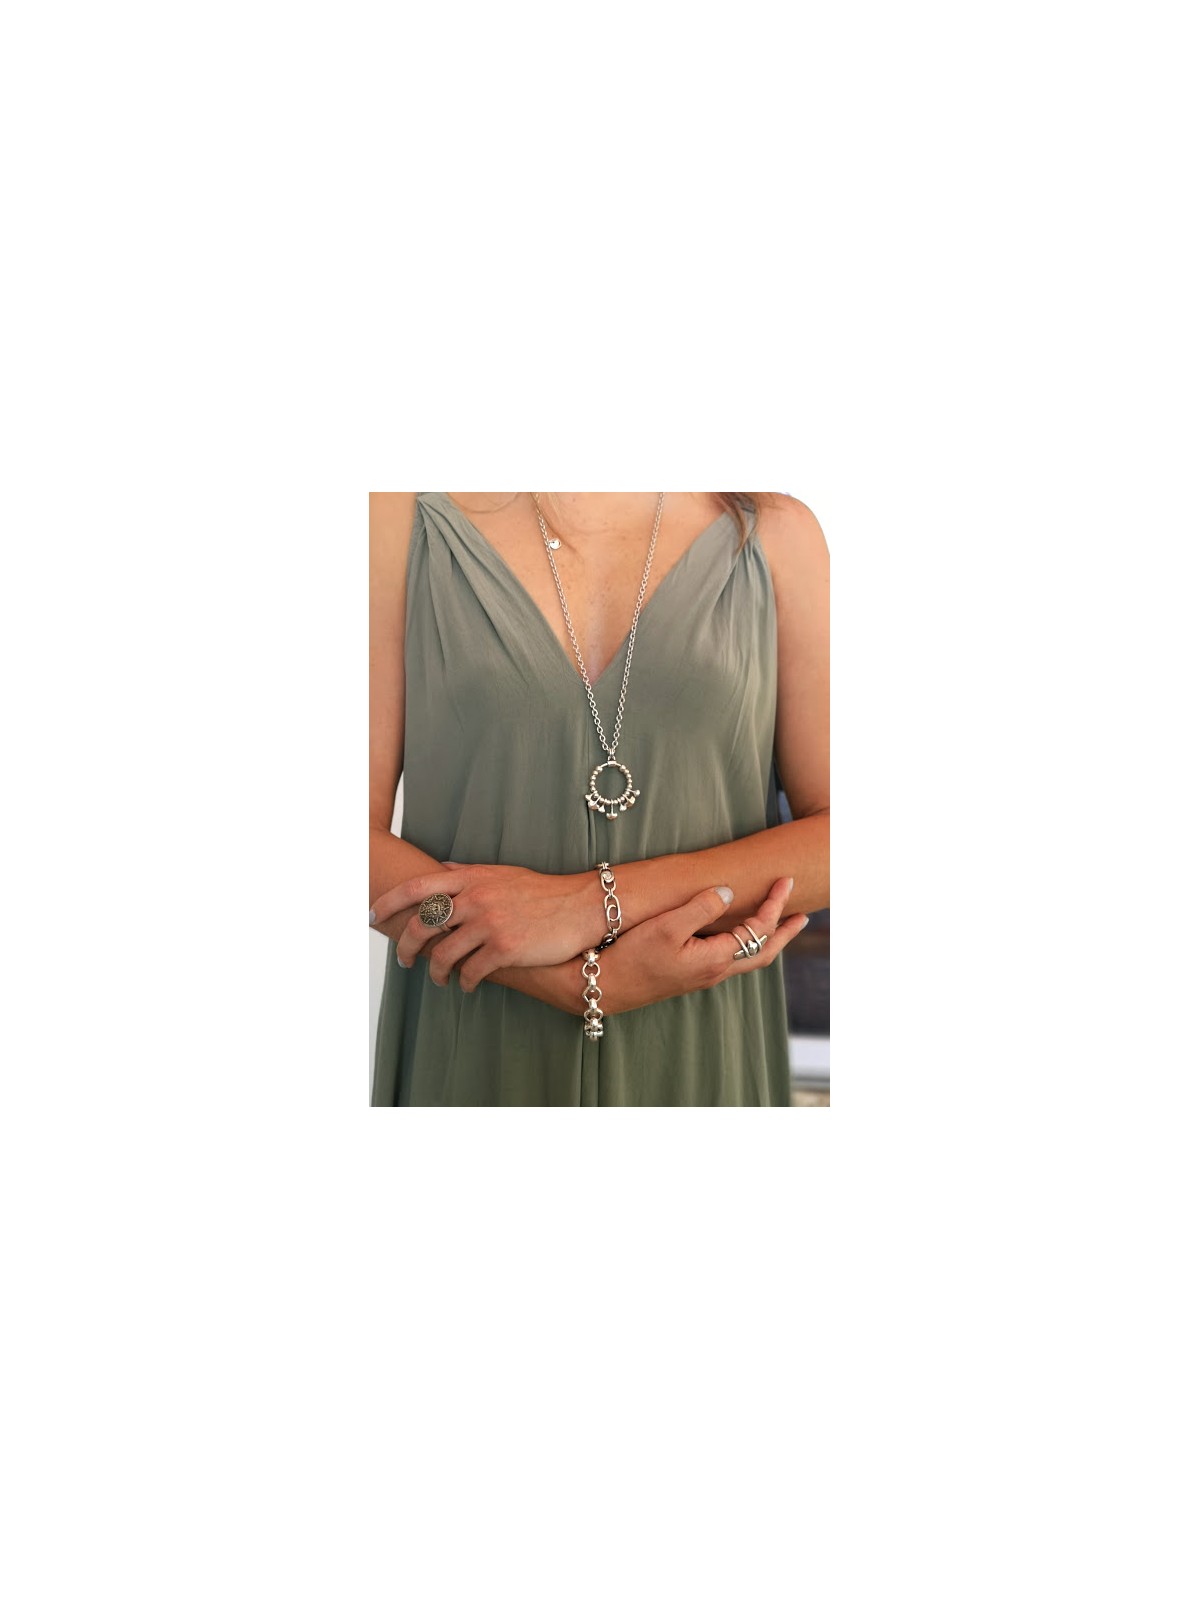 Bracelet Ciclon chaîne maillon | 1 vue portée de face | Tilleulmenthe boutique de mode femme en ligne